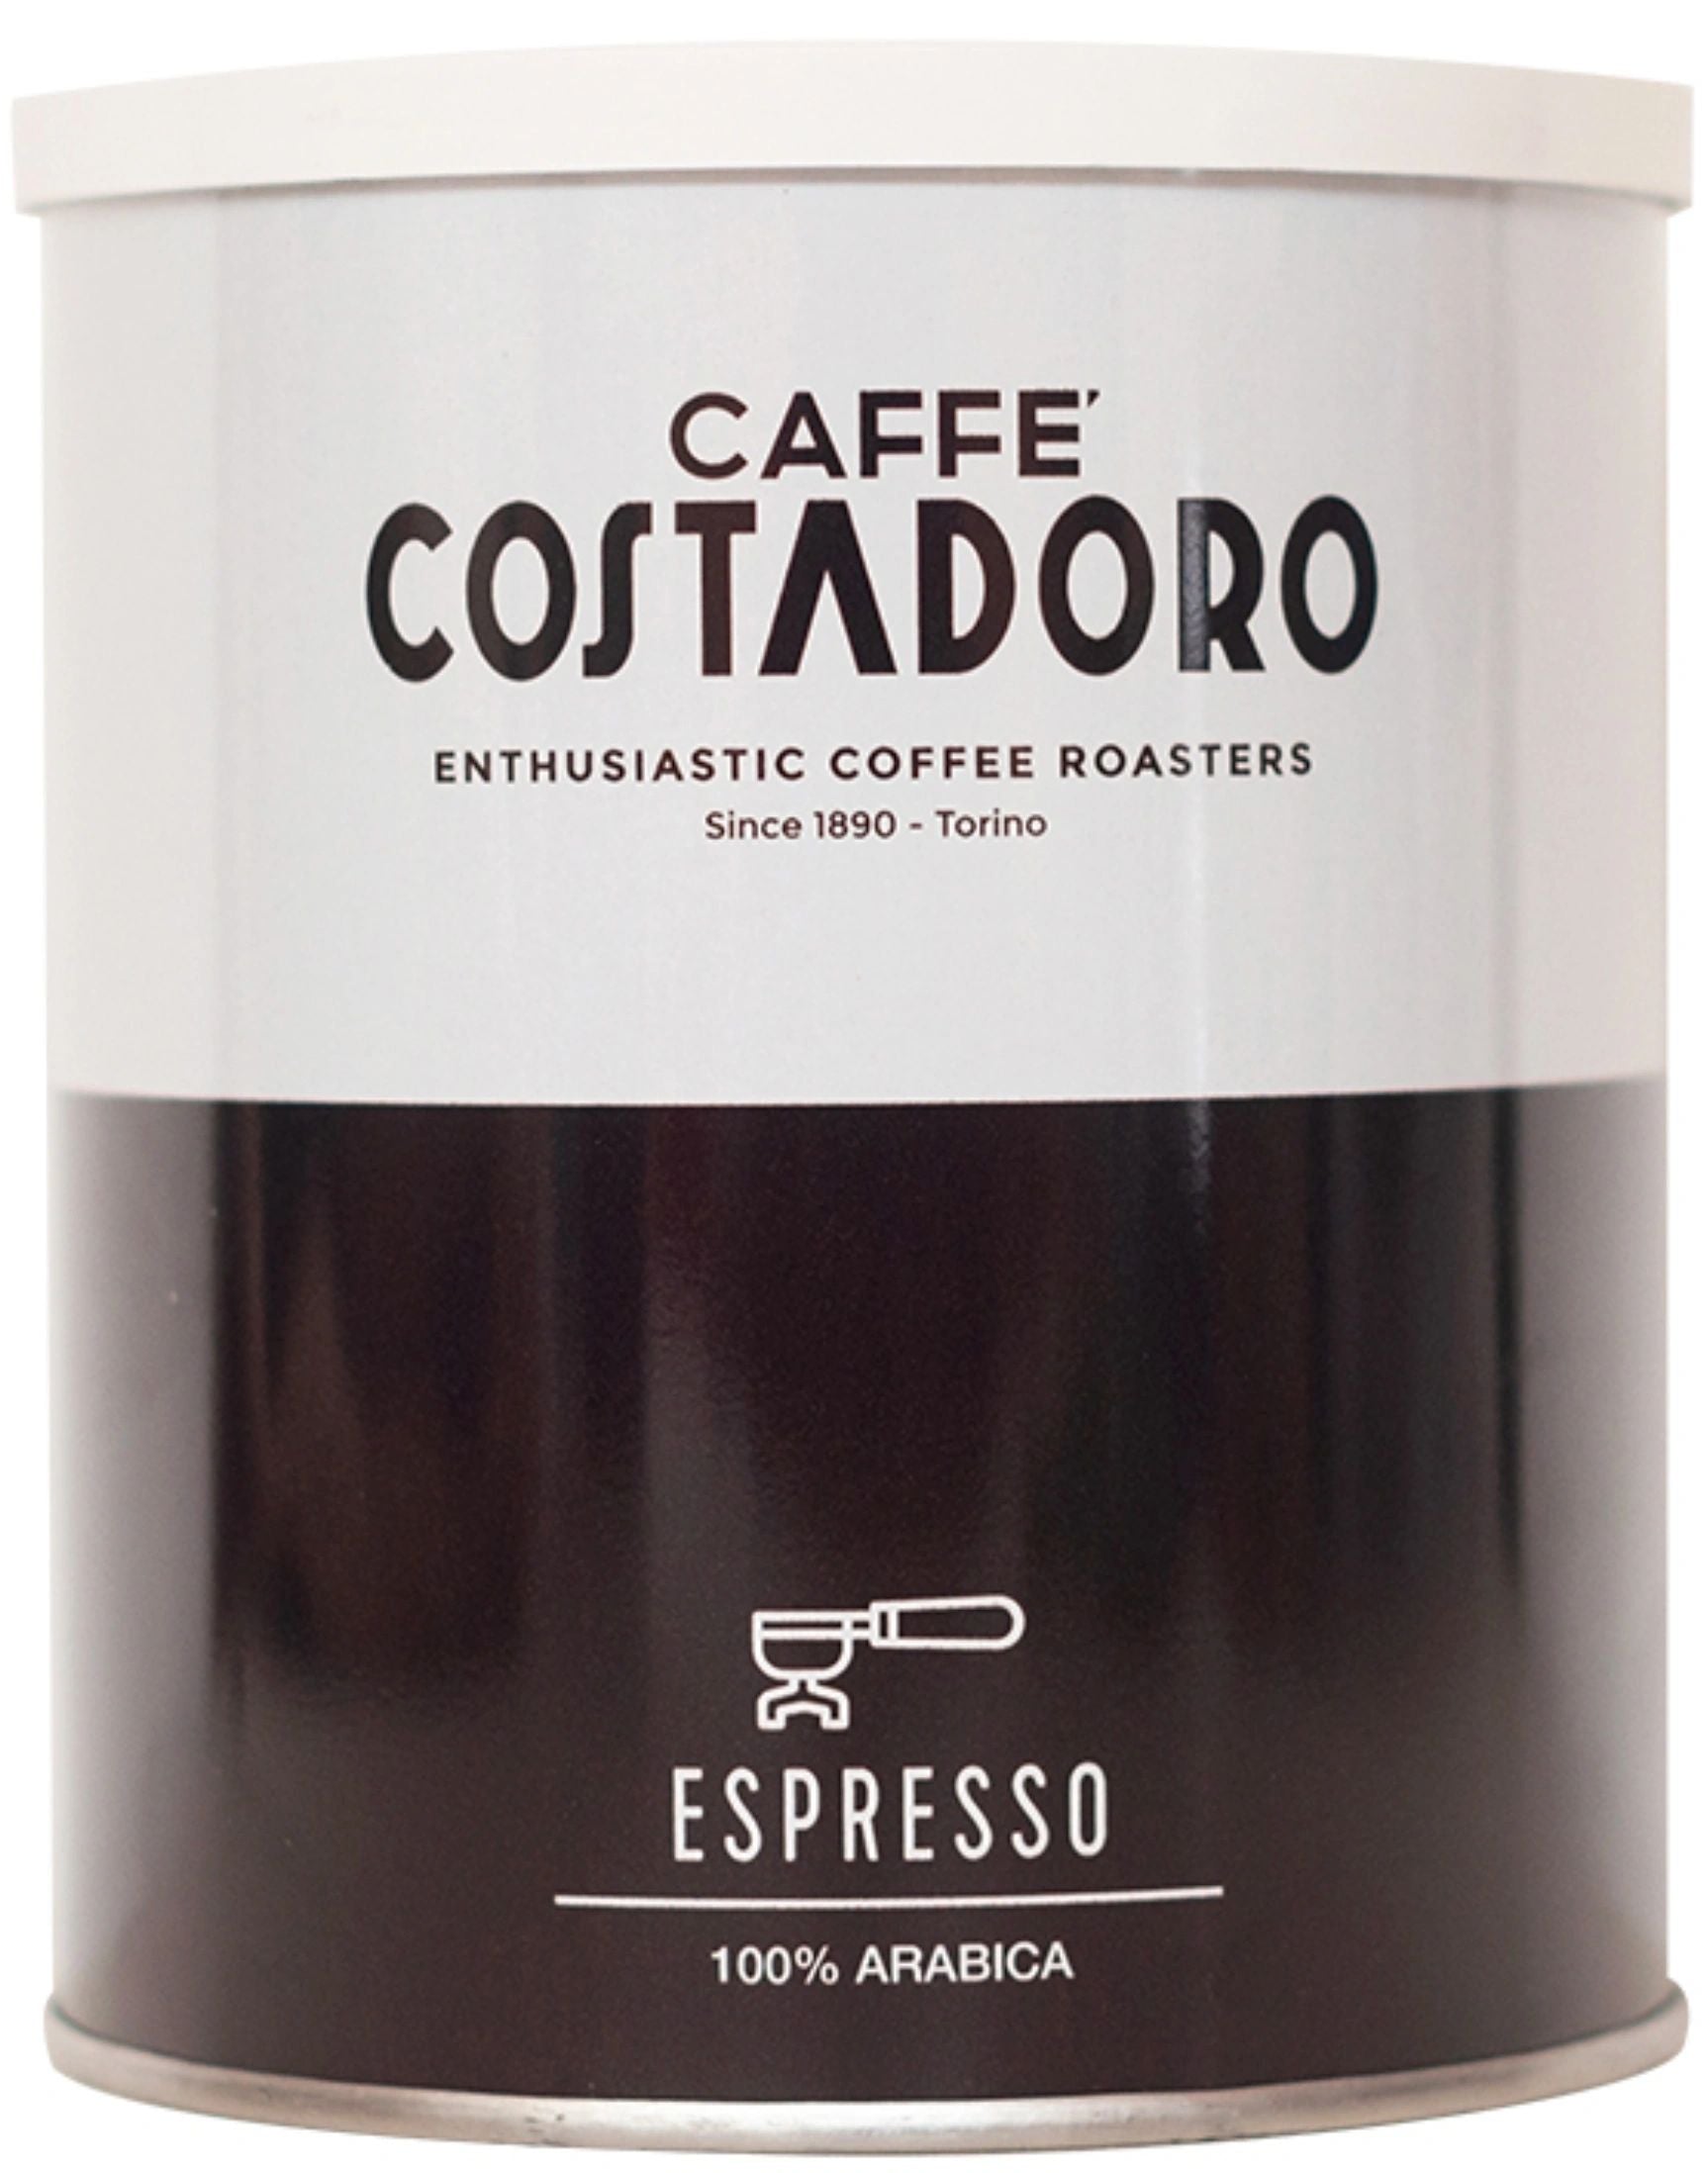 Espresso - Ground (2 cans, 8.8 oz ea)